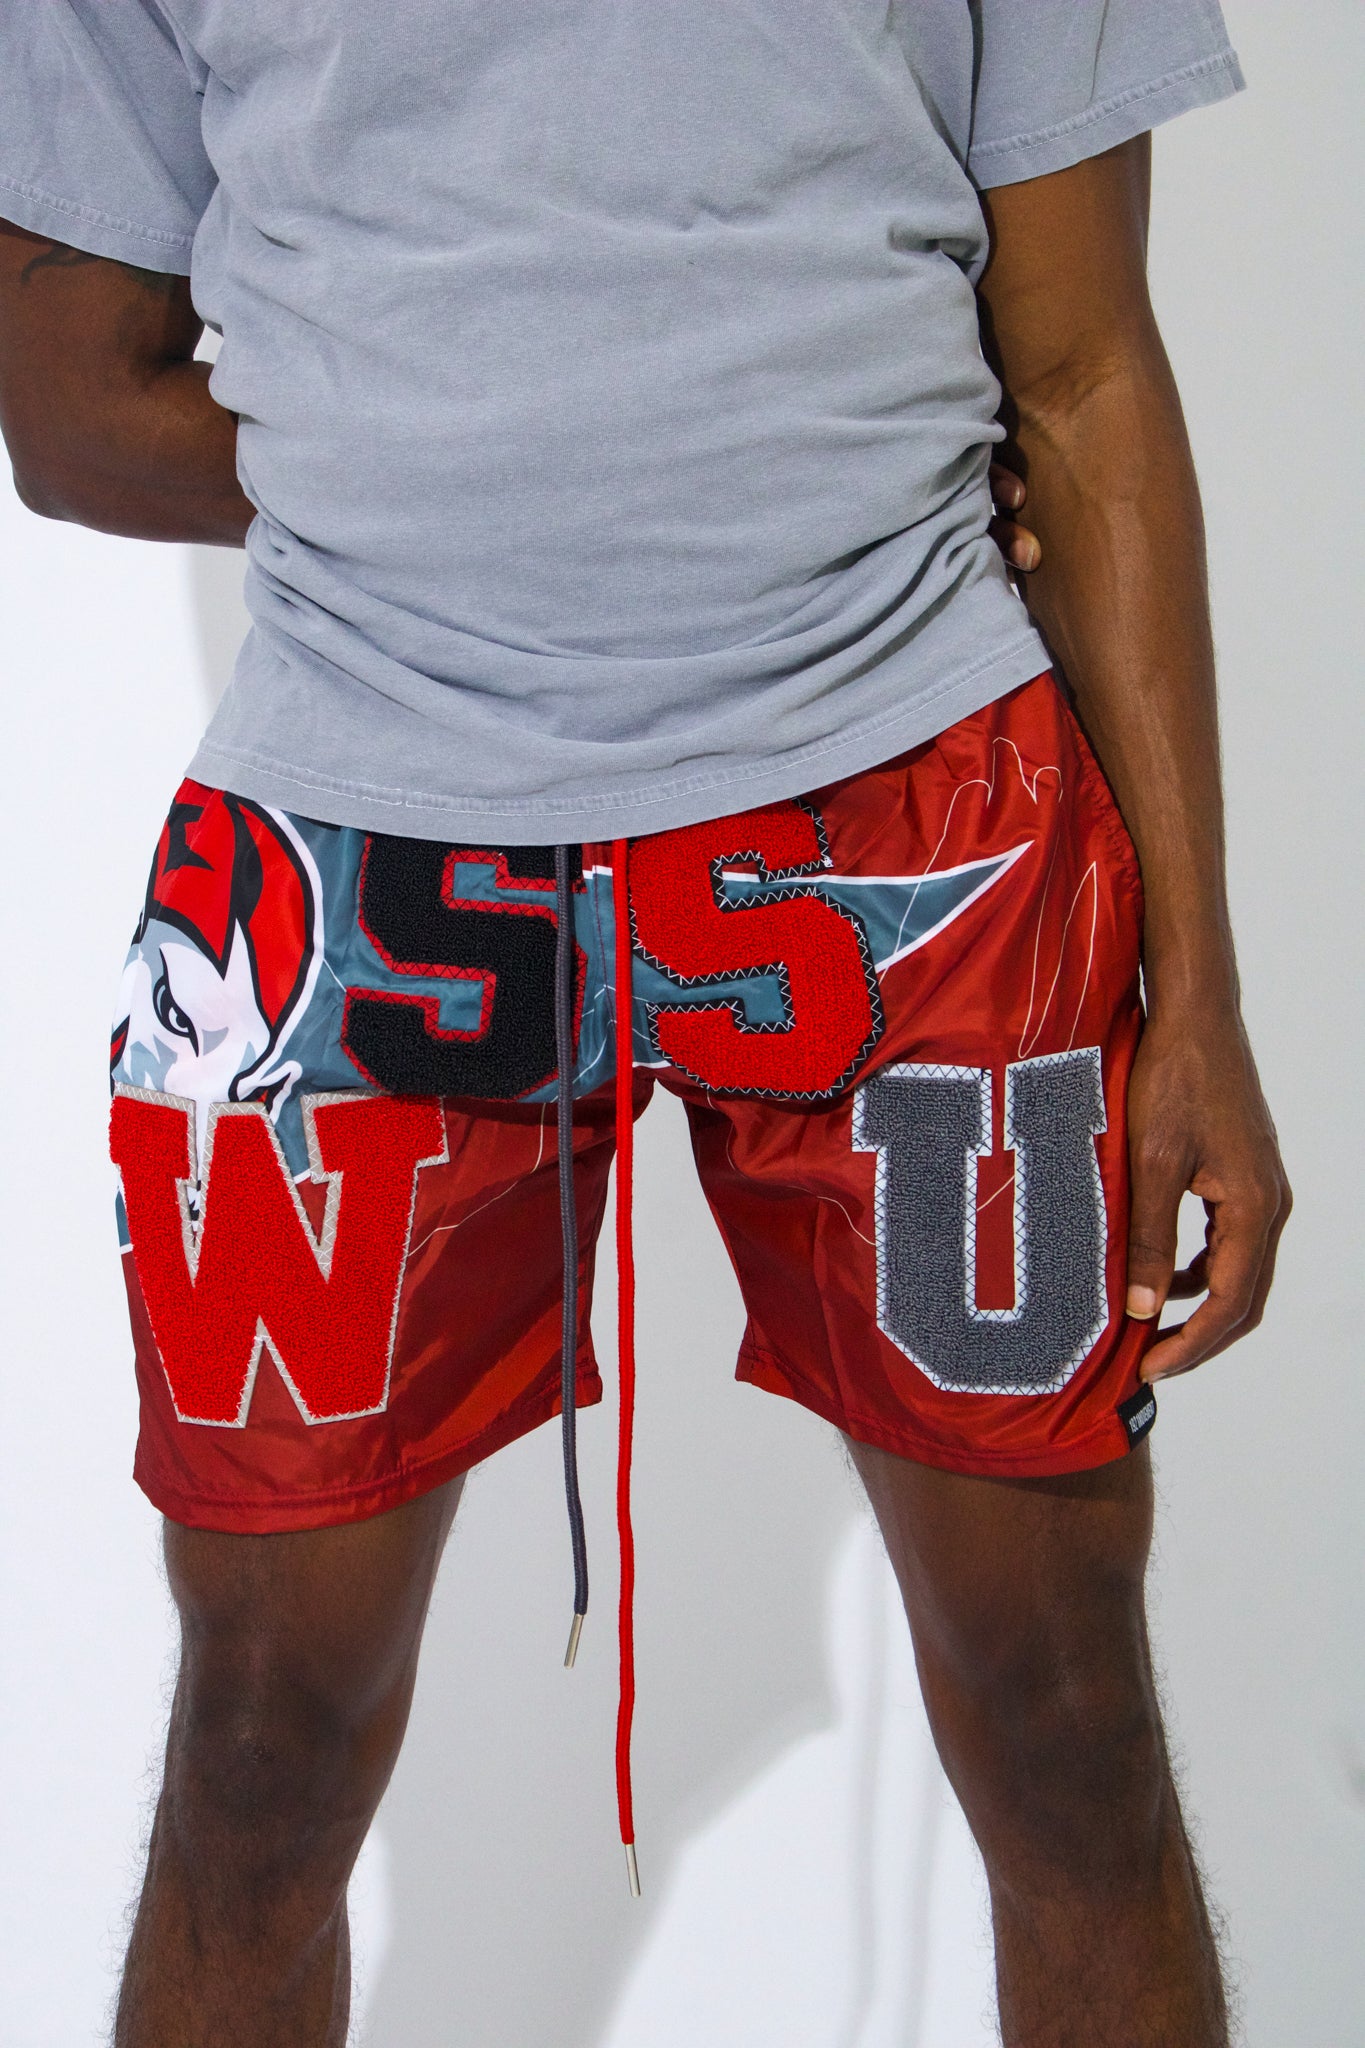 Winston Salem State Shorts